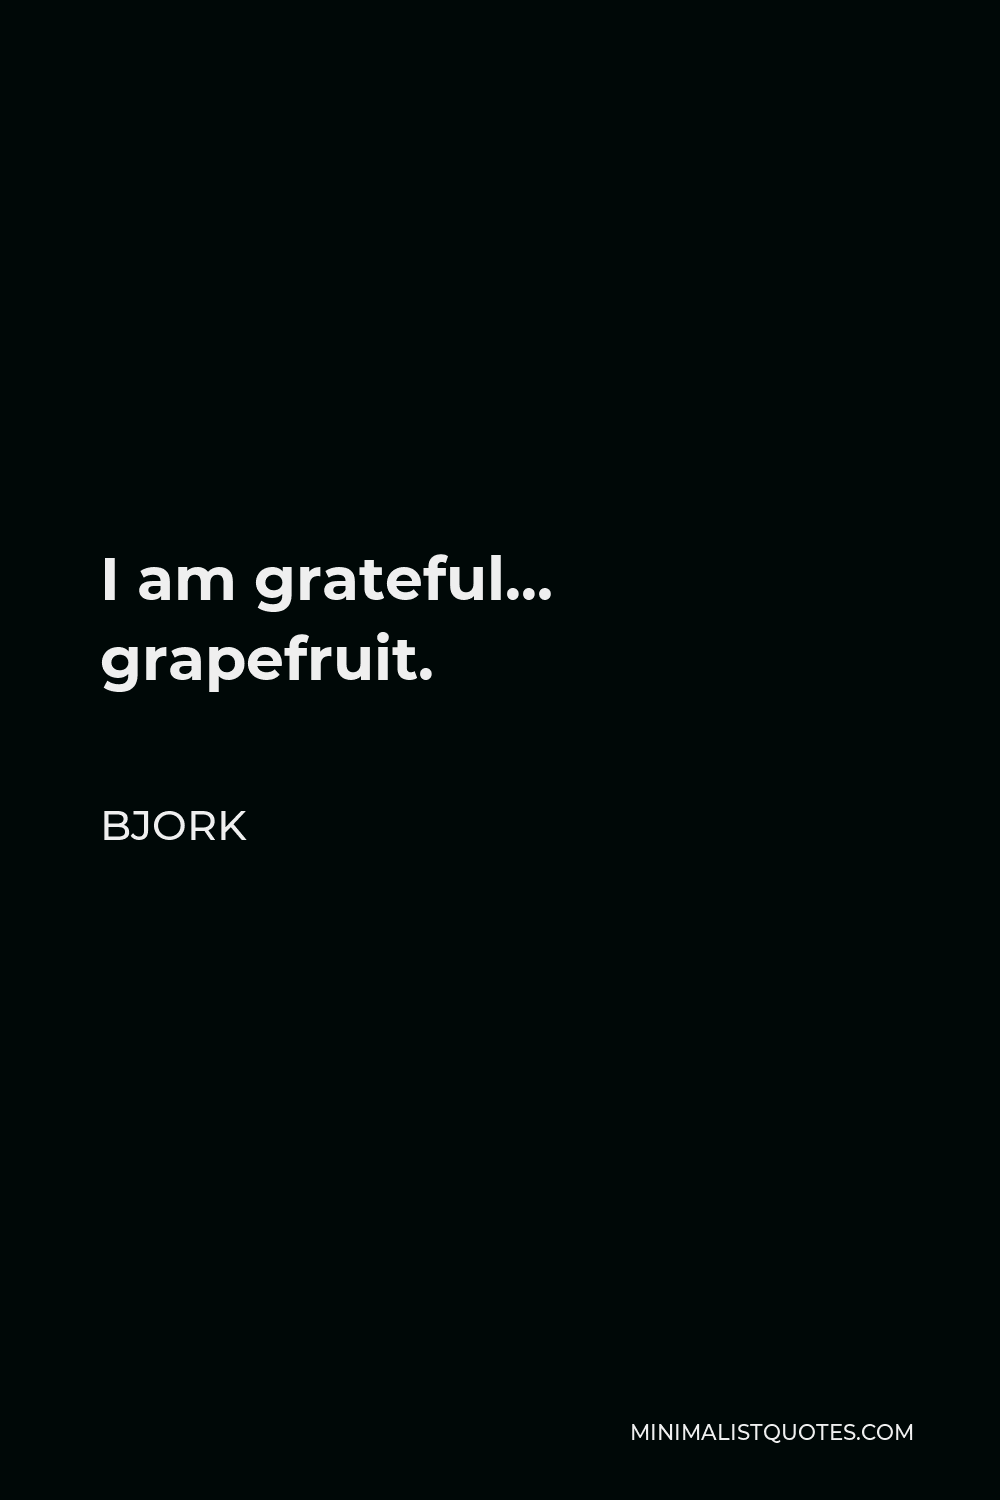 Bjork Quote - I am grateful… grapefruit.